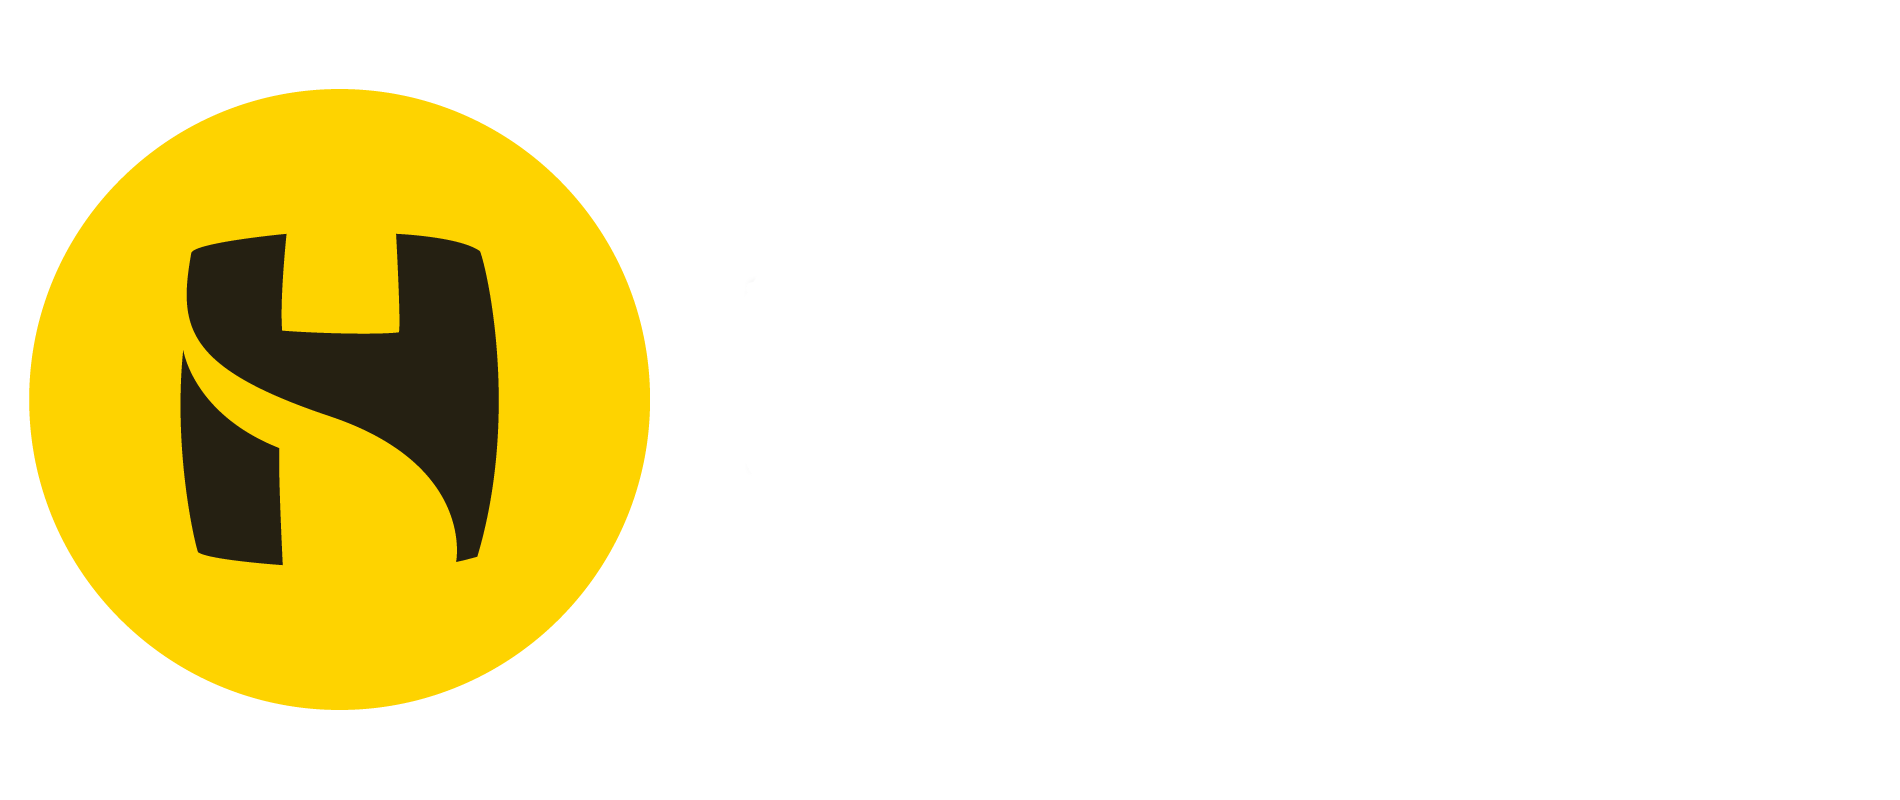 Holyhead School